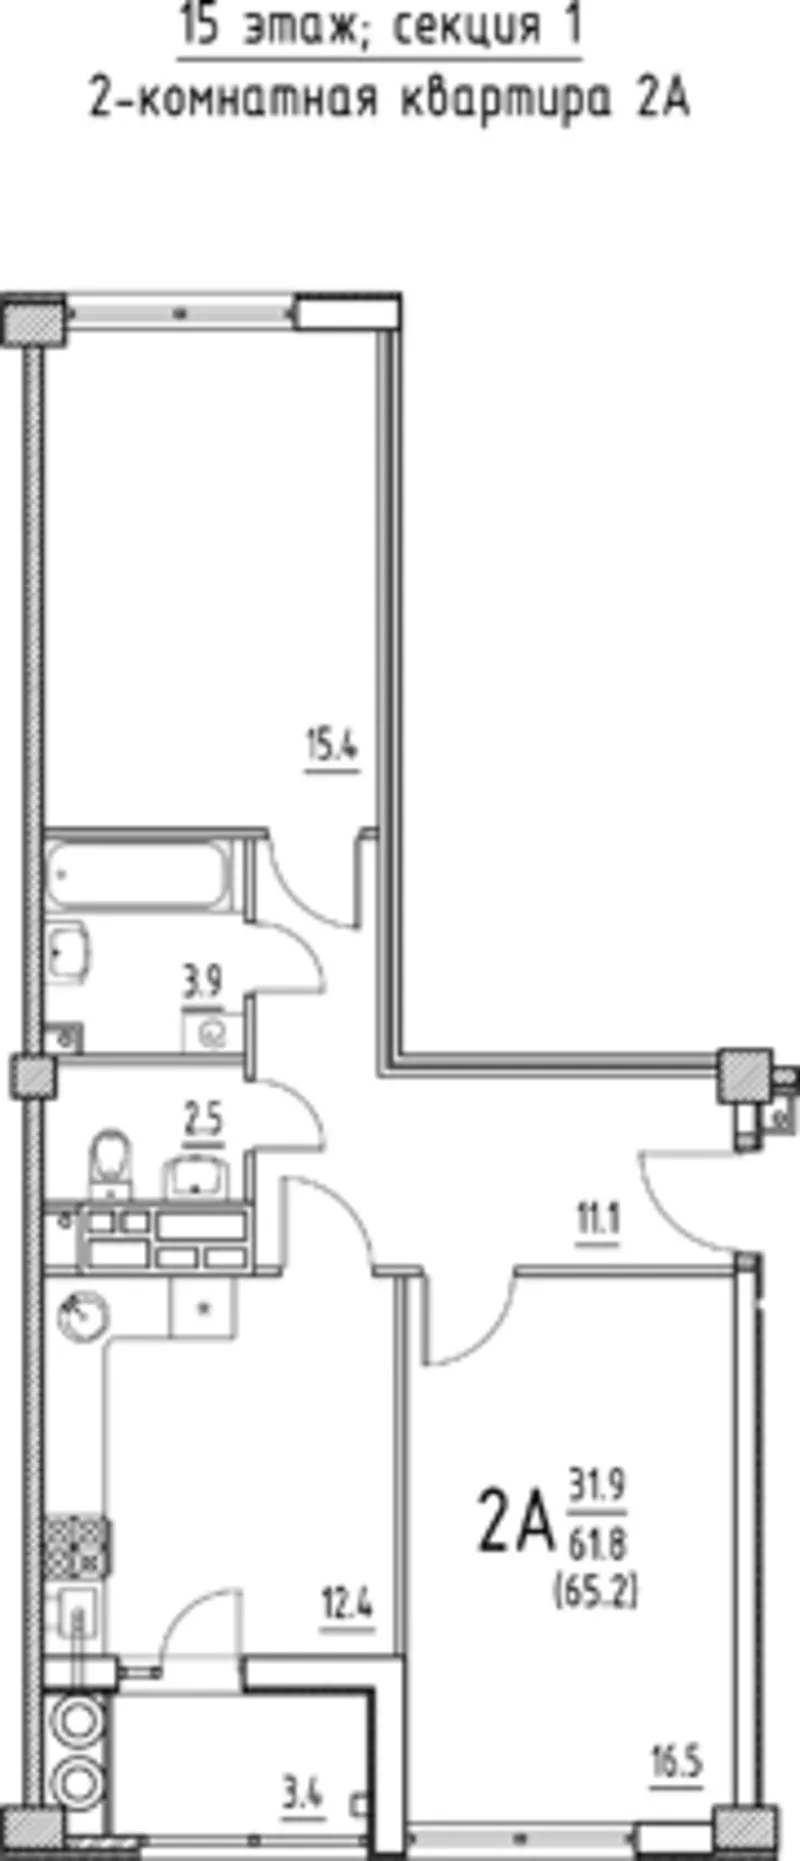 Apartament cu 2 odai 65, 2 m2 - achitarea in rate!!! 3